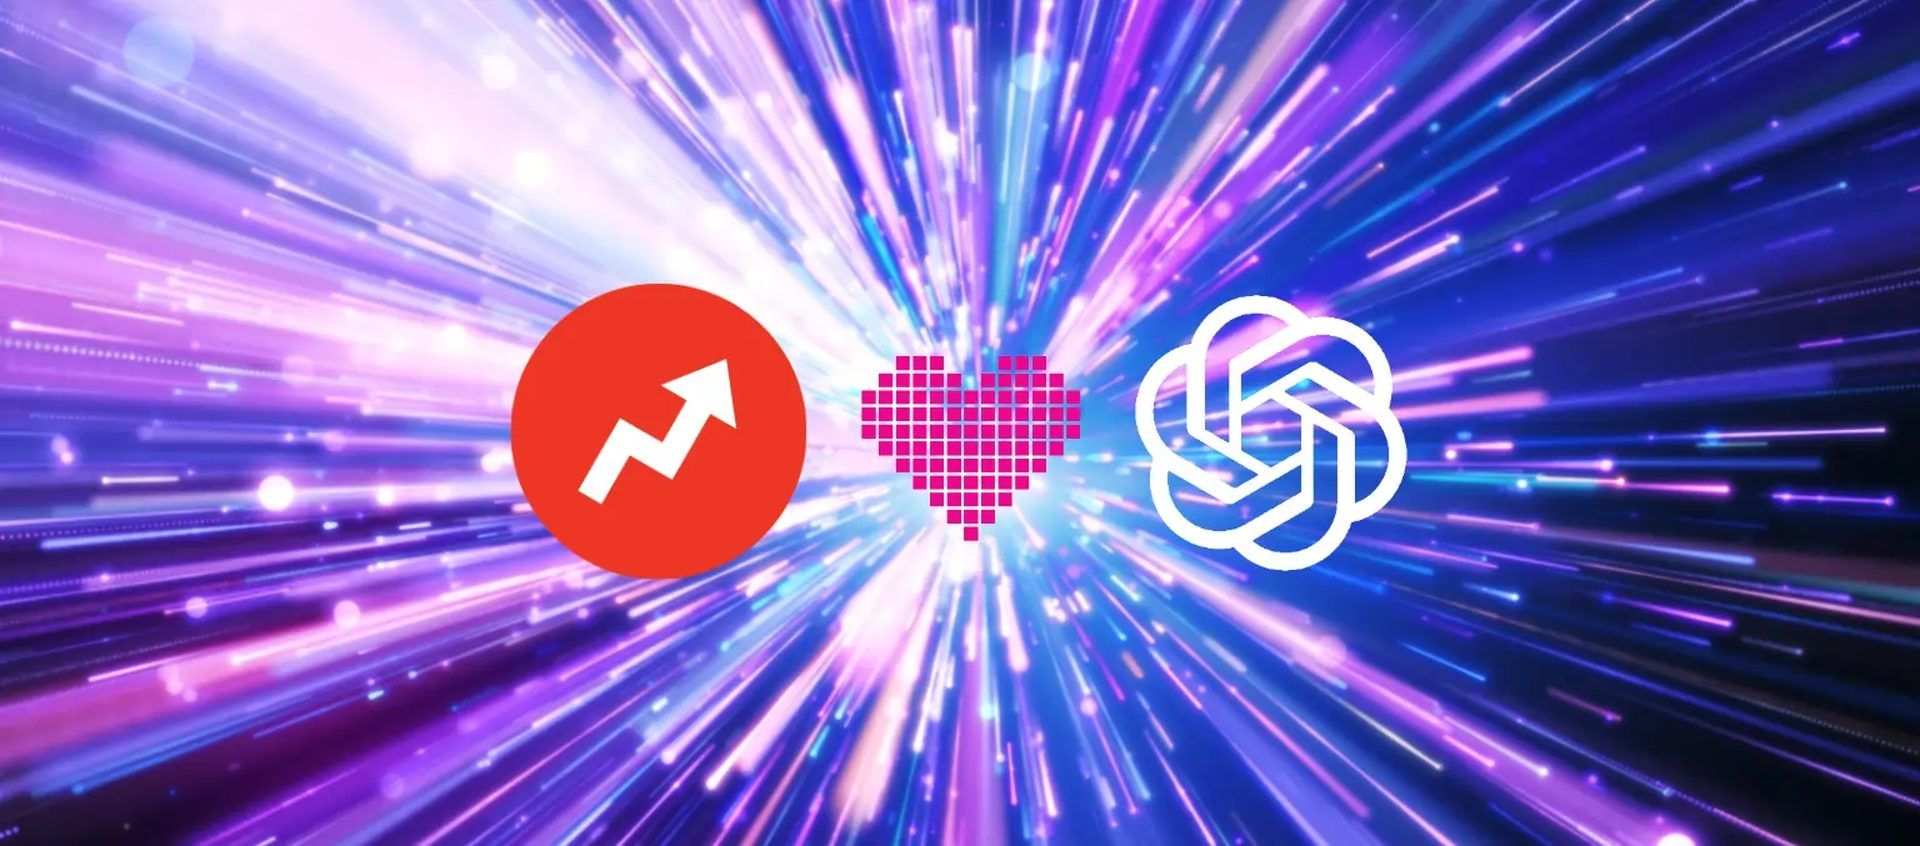 Negócio do BuzzFeed ChatGPT: ações do Buzzfeed sobem de entusiasmo com a OpenAI